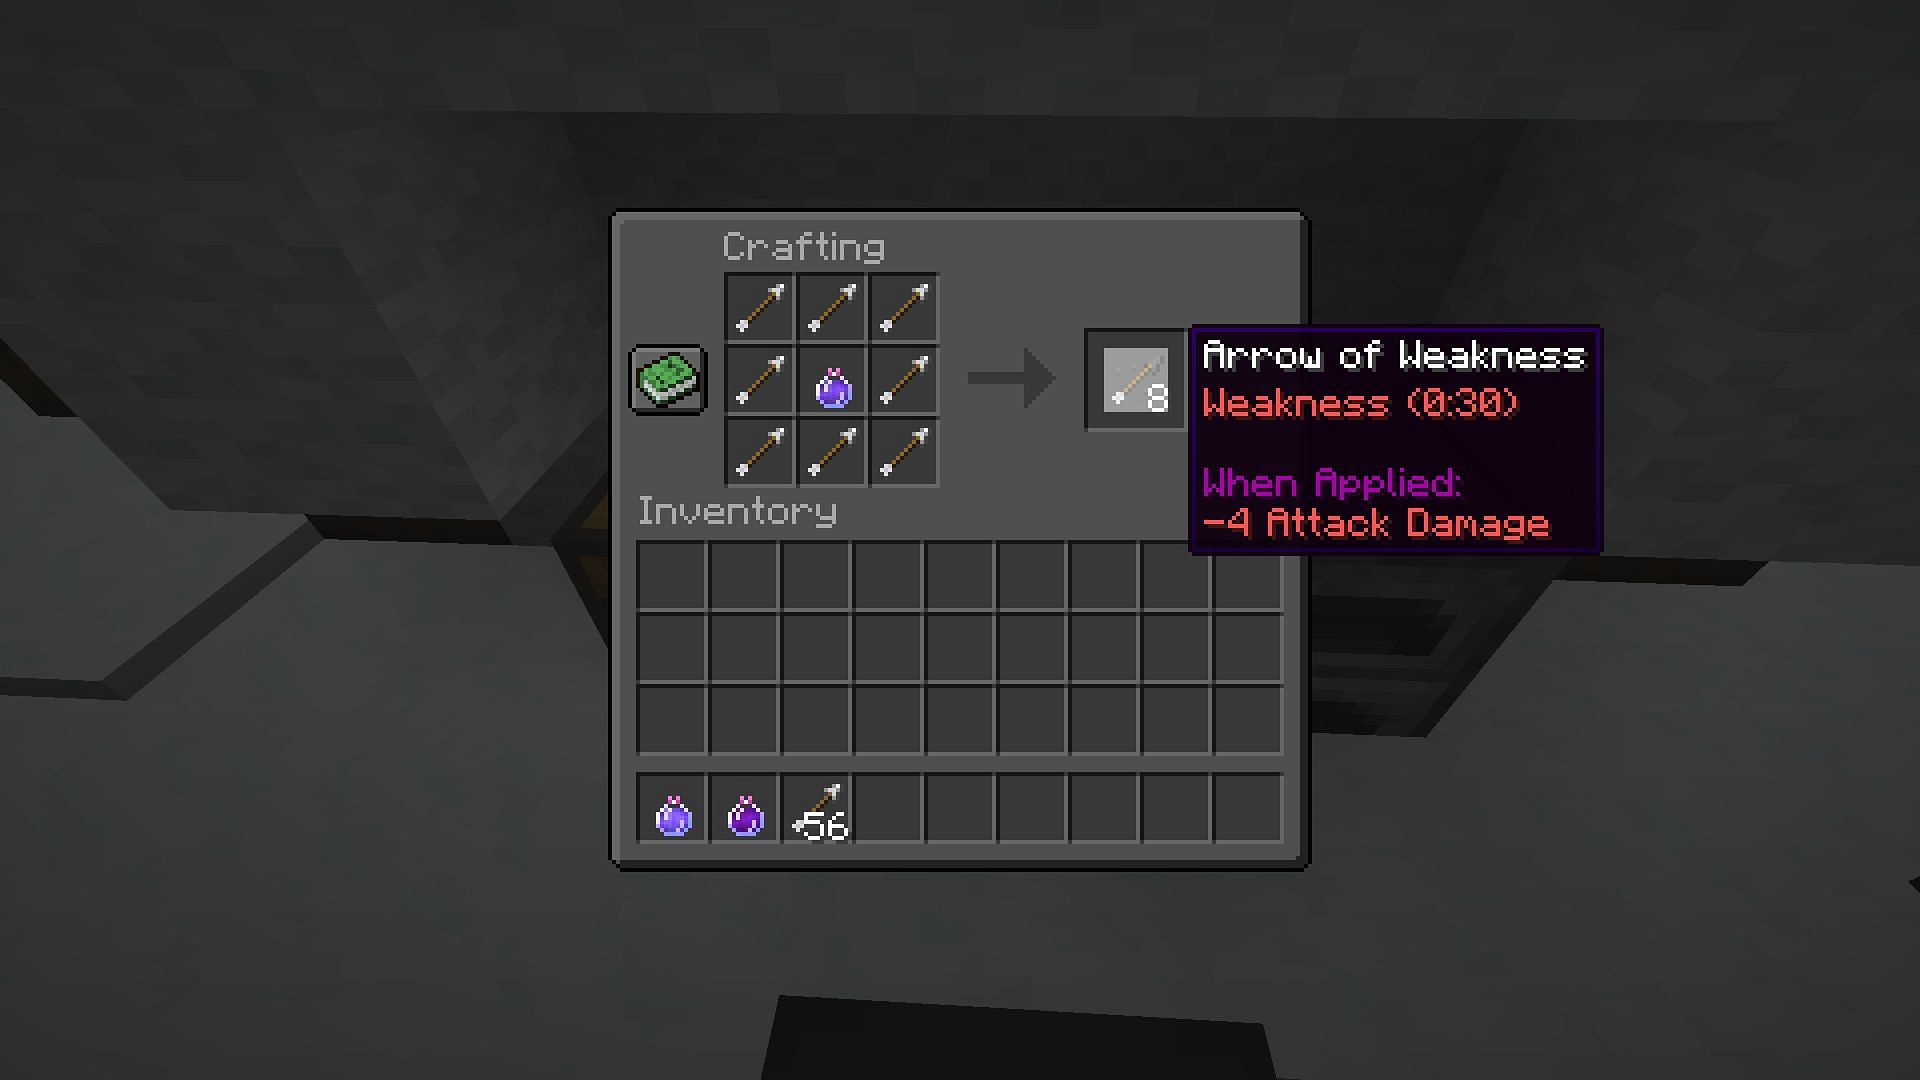 Arrow of weakness (Image via Minecraft 1.19 update)